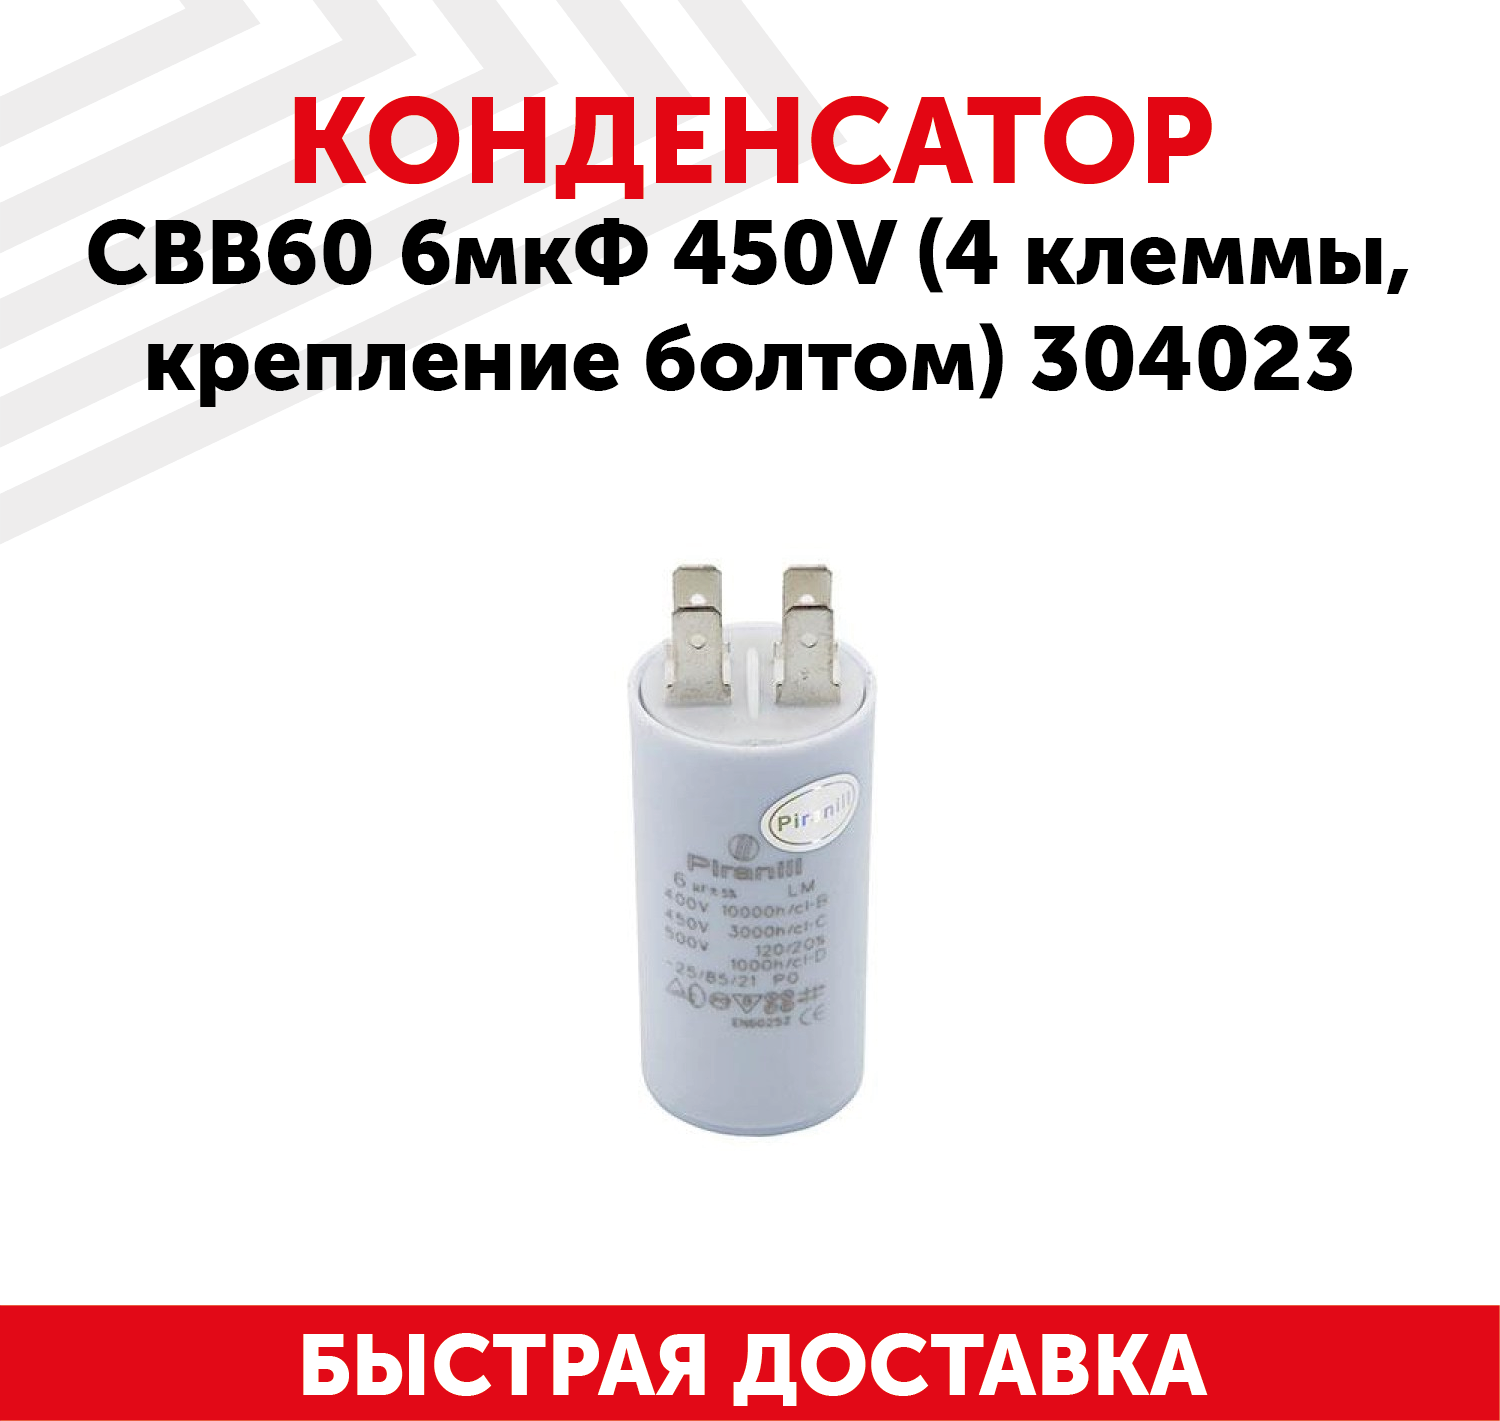 Конденсатор CBB60 6мкФ для электро- и бензоинструмента, 450В, 4 клеммы, крепление болтом, 304023